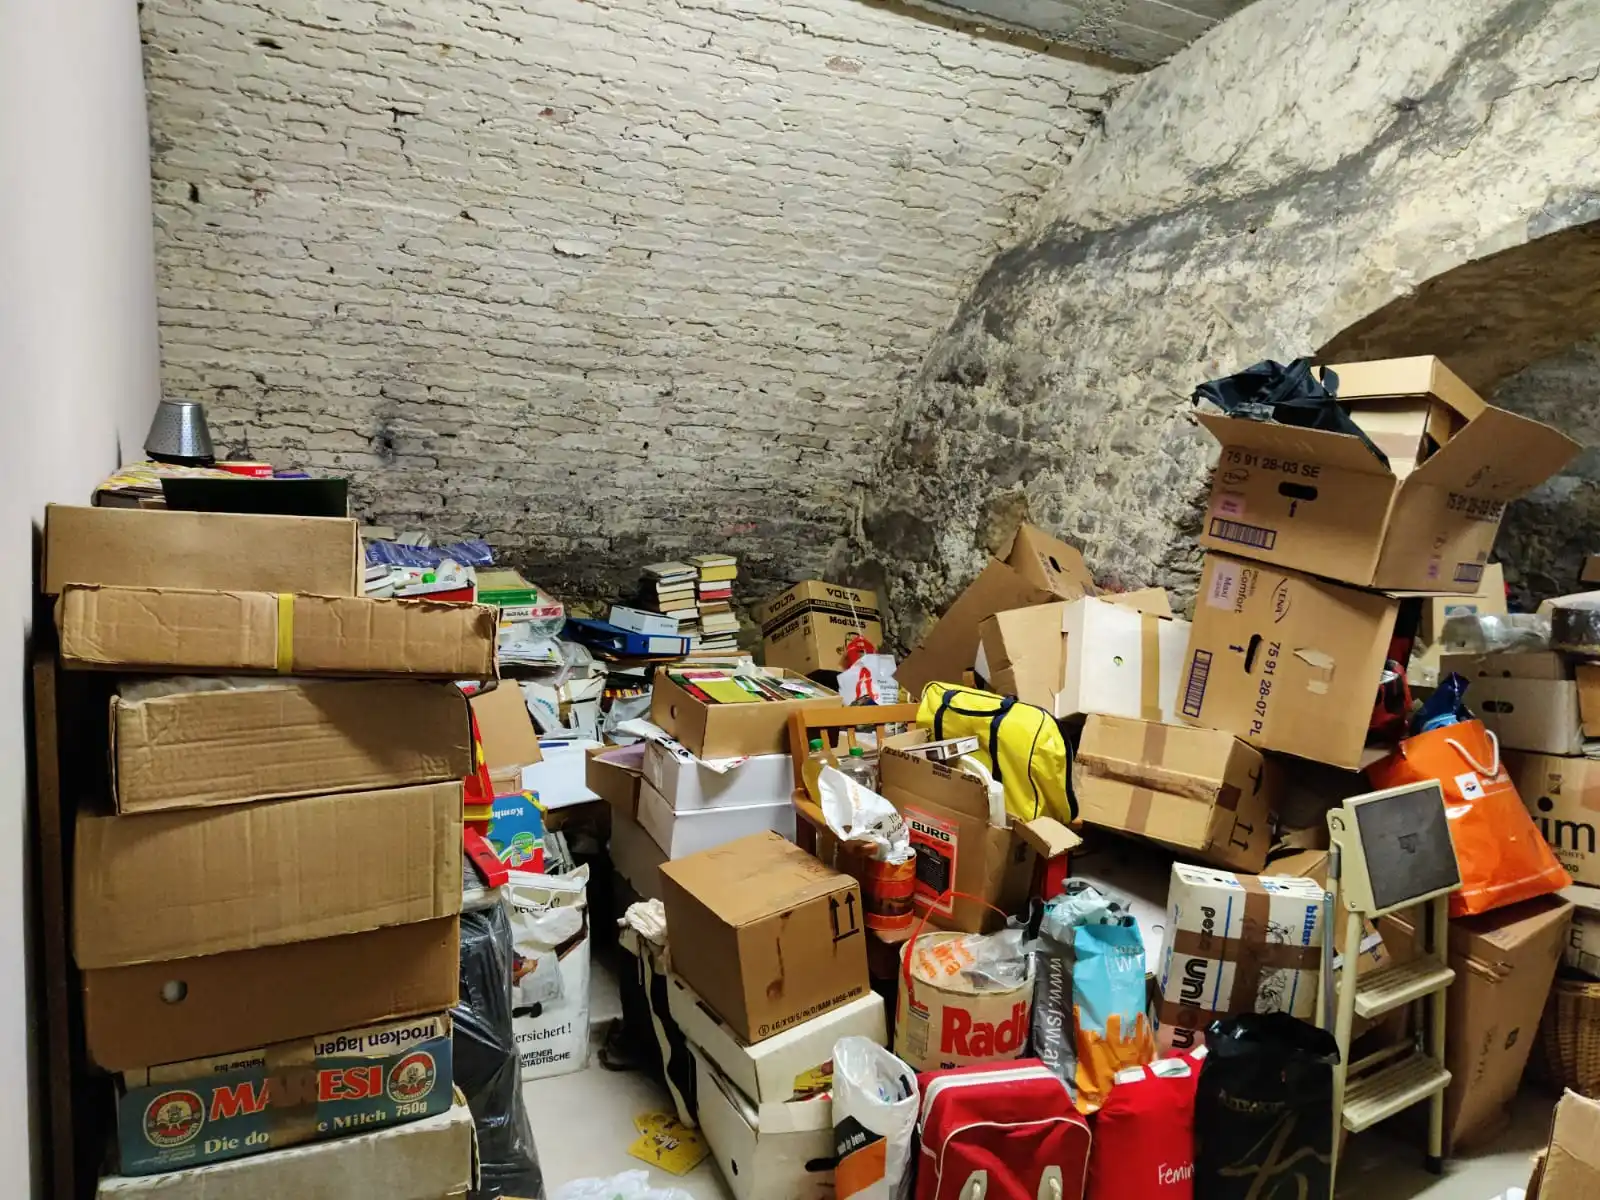 Pakete und Bücher, Leitern, Taschen und sonstige Gegenstände, die im Lagerraum regelmäßig und ungeordnet übereinander gestapelt sind